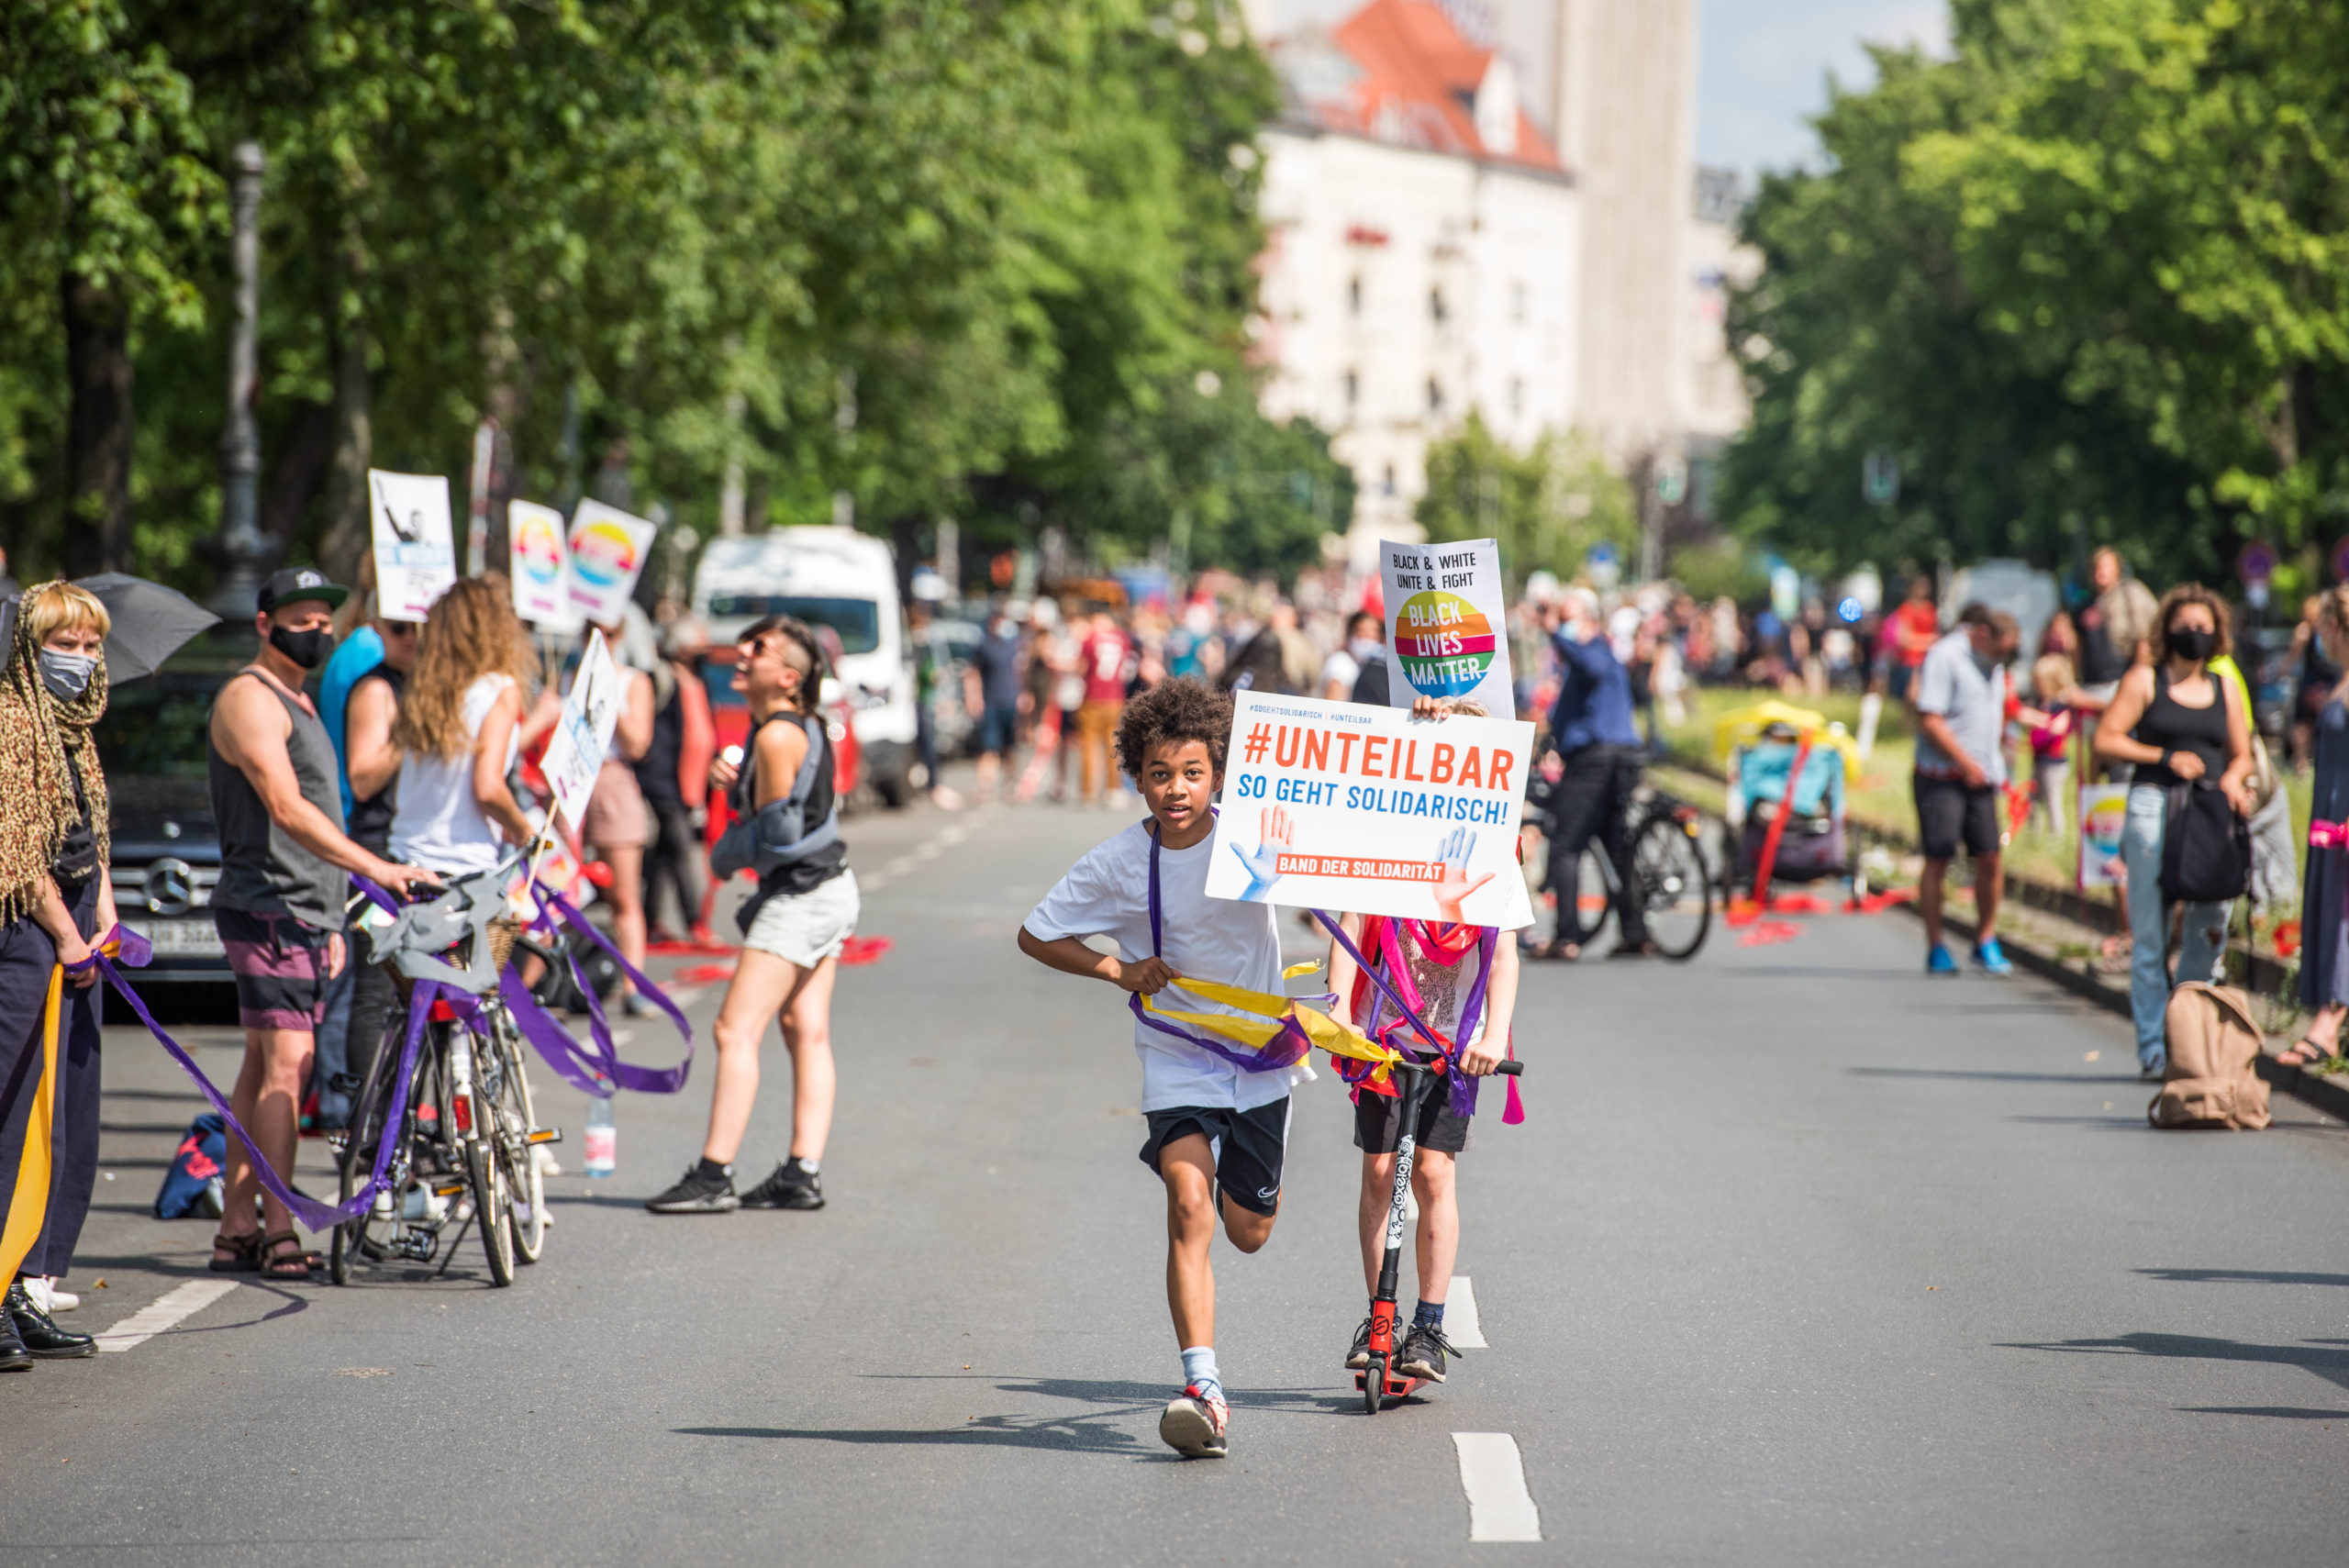 So geht solidarisch: Am 4. September findet in Berlin die große Unteilbar-Demo statt. Foto: Unteilbar